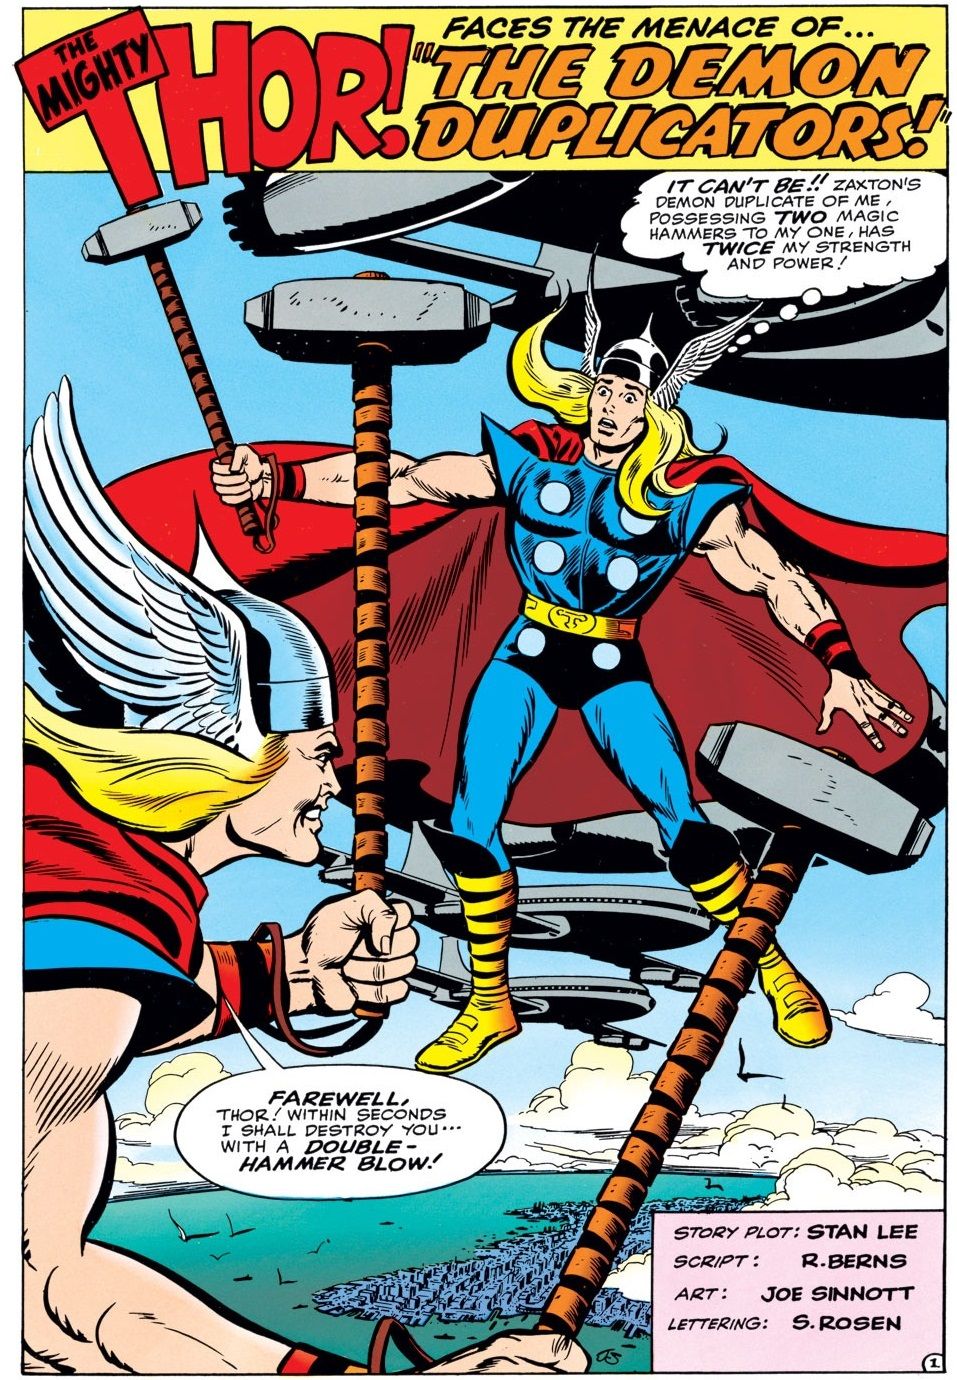 Thor walczy ze złym sobowtórem